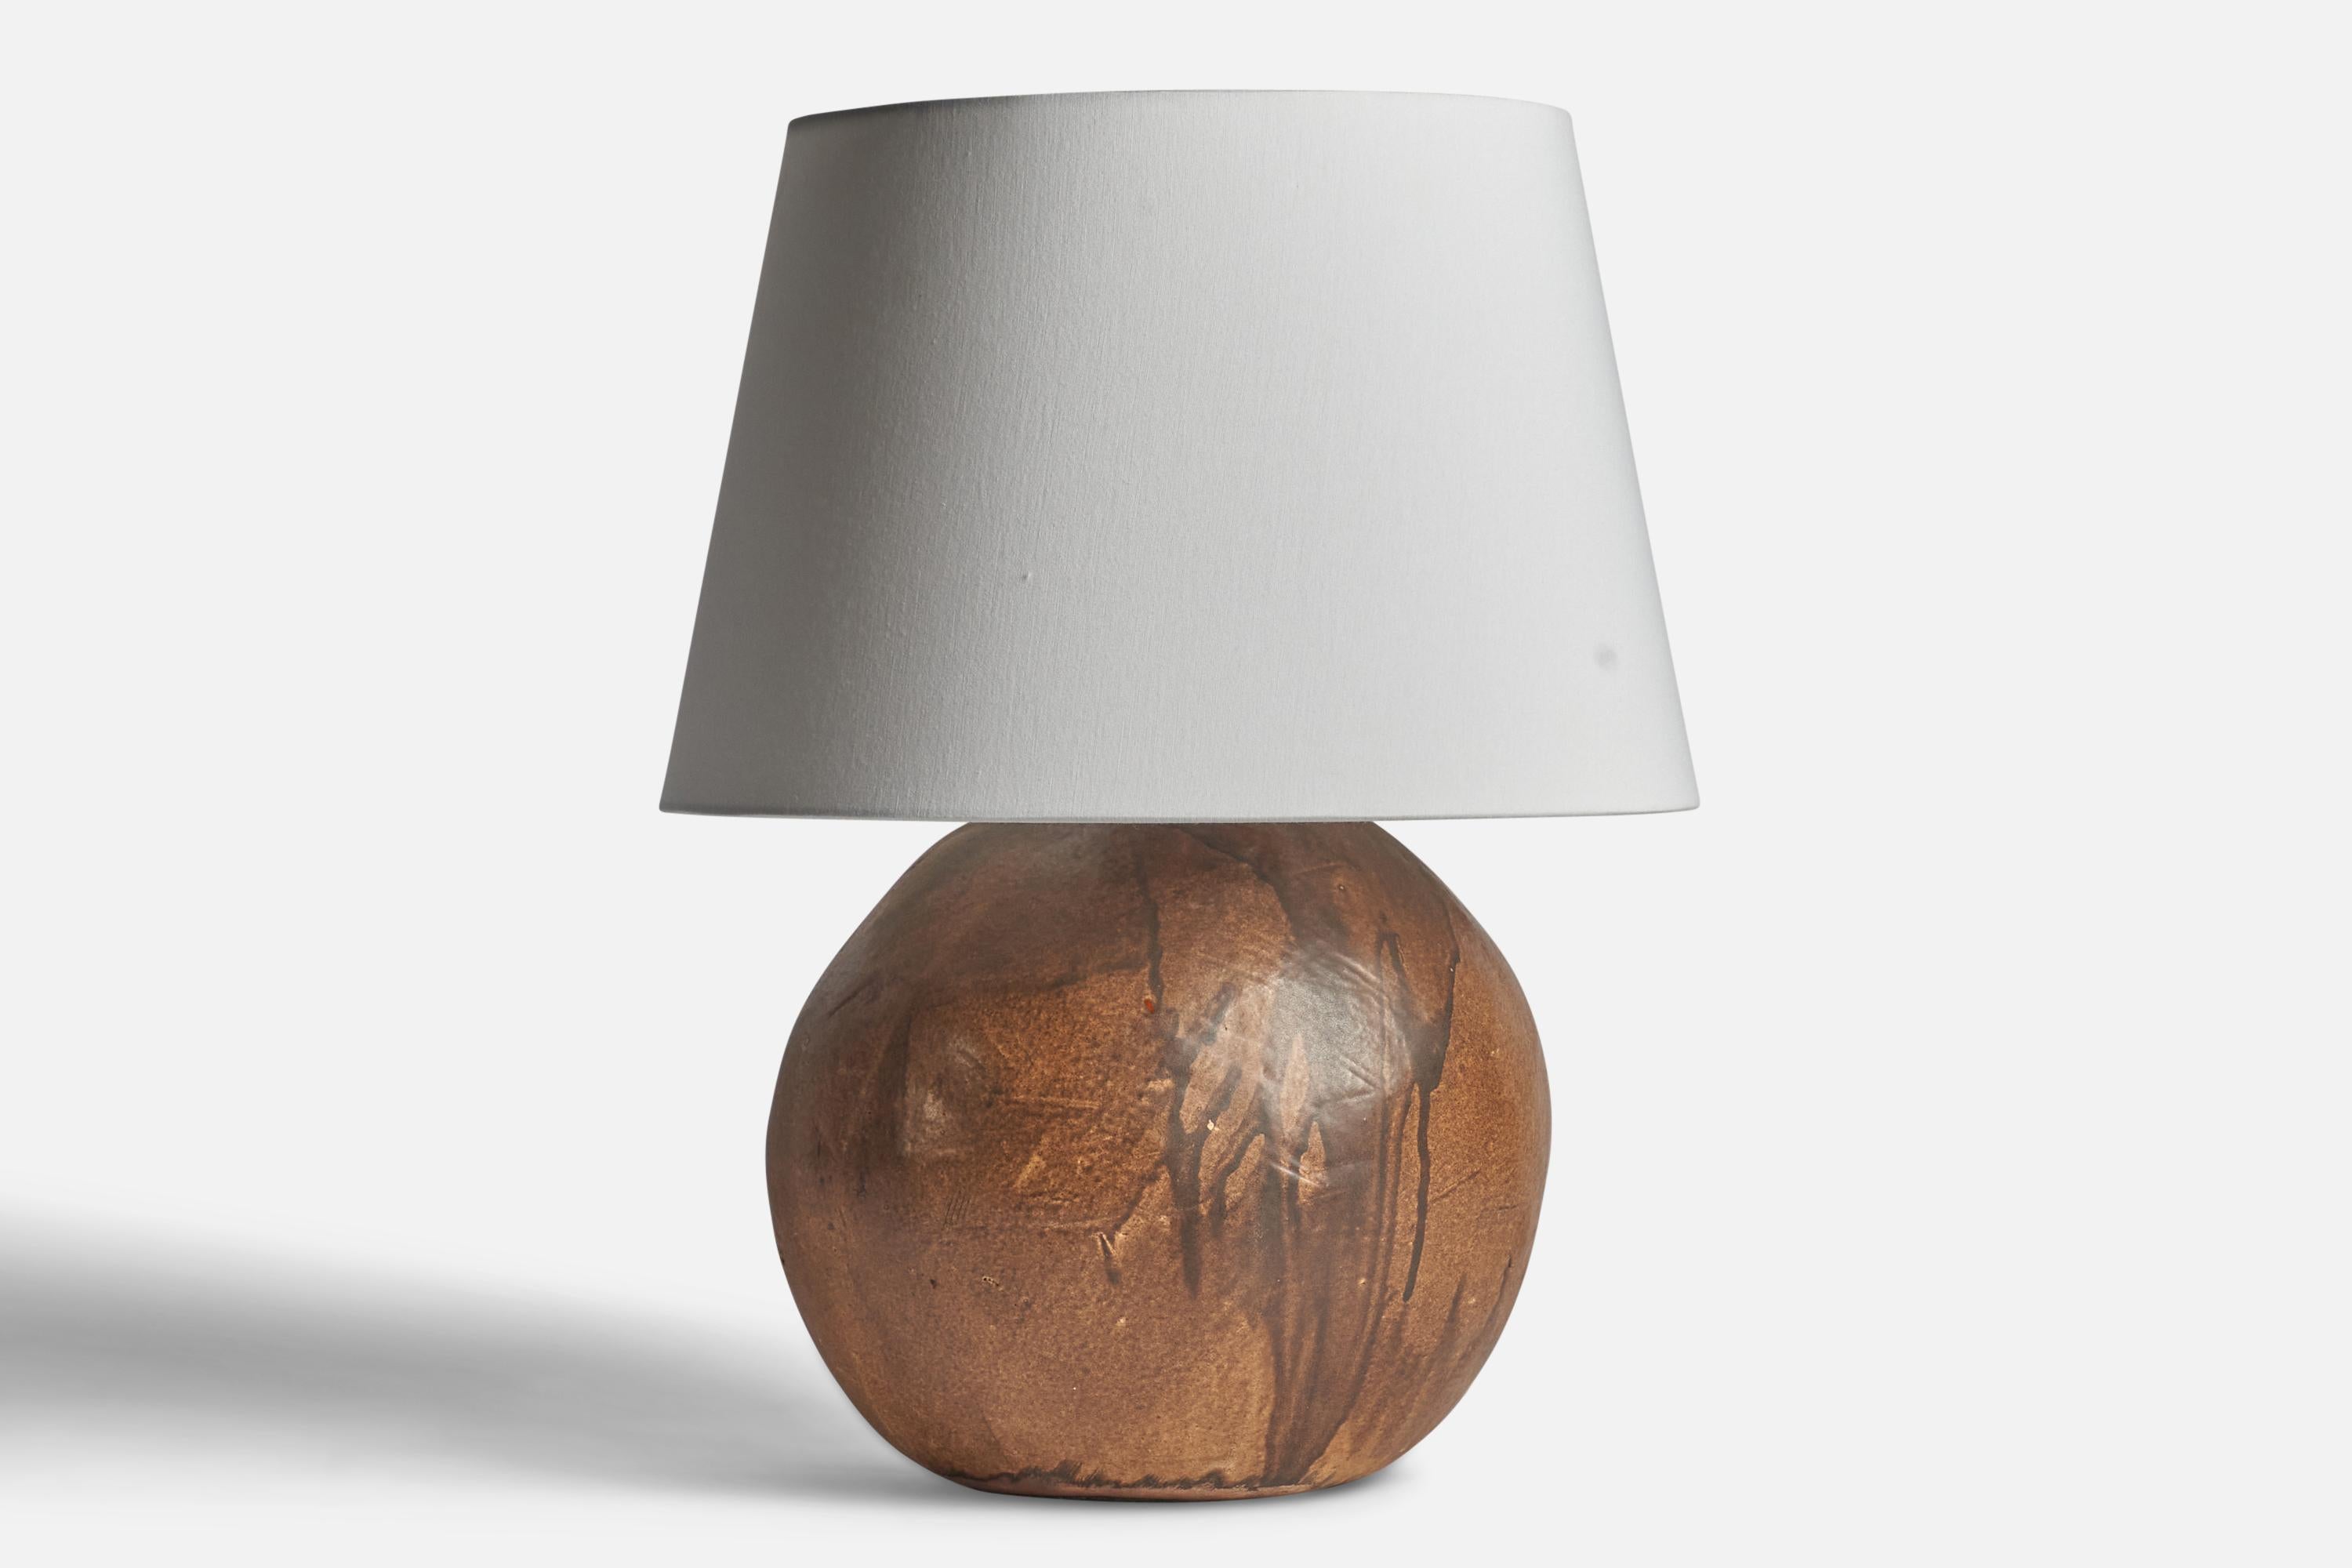 Große Tischlampe aus braun glasierter Keramik, entworfen und hergestellt in Dänemark, ca. 1960er Jahre.

Abmessungen der Lampe (Zoll): 16,5